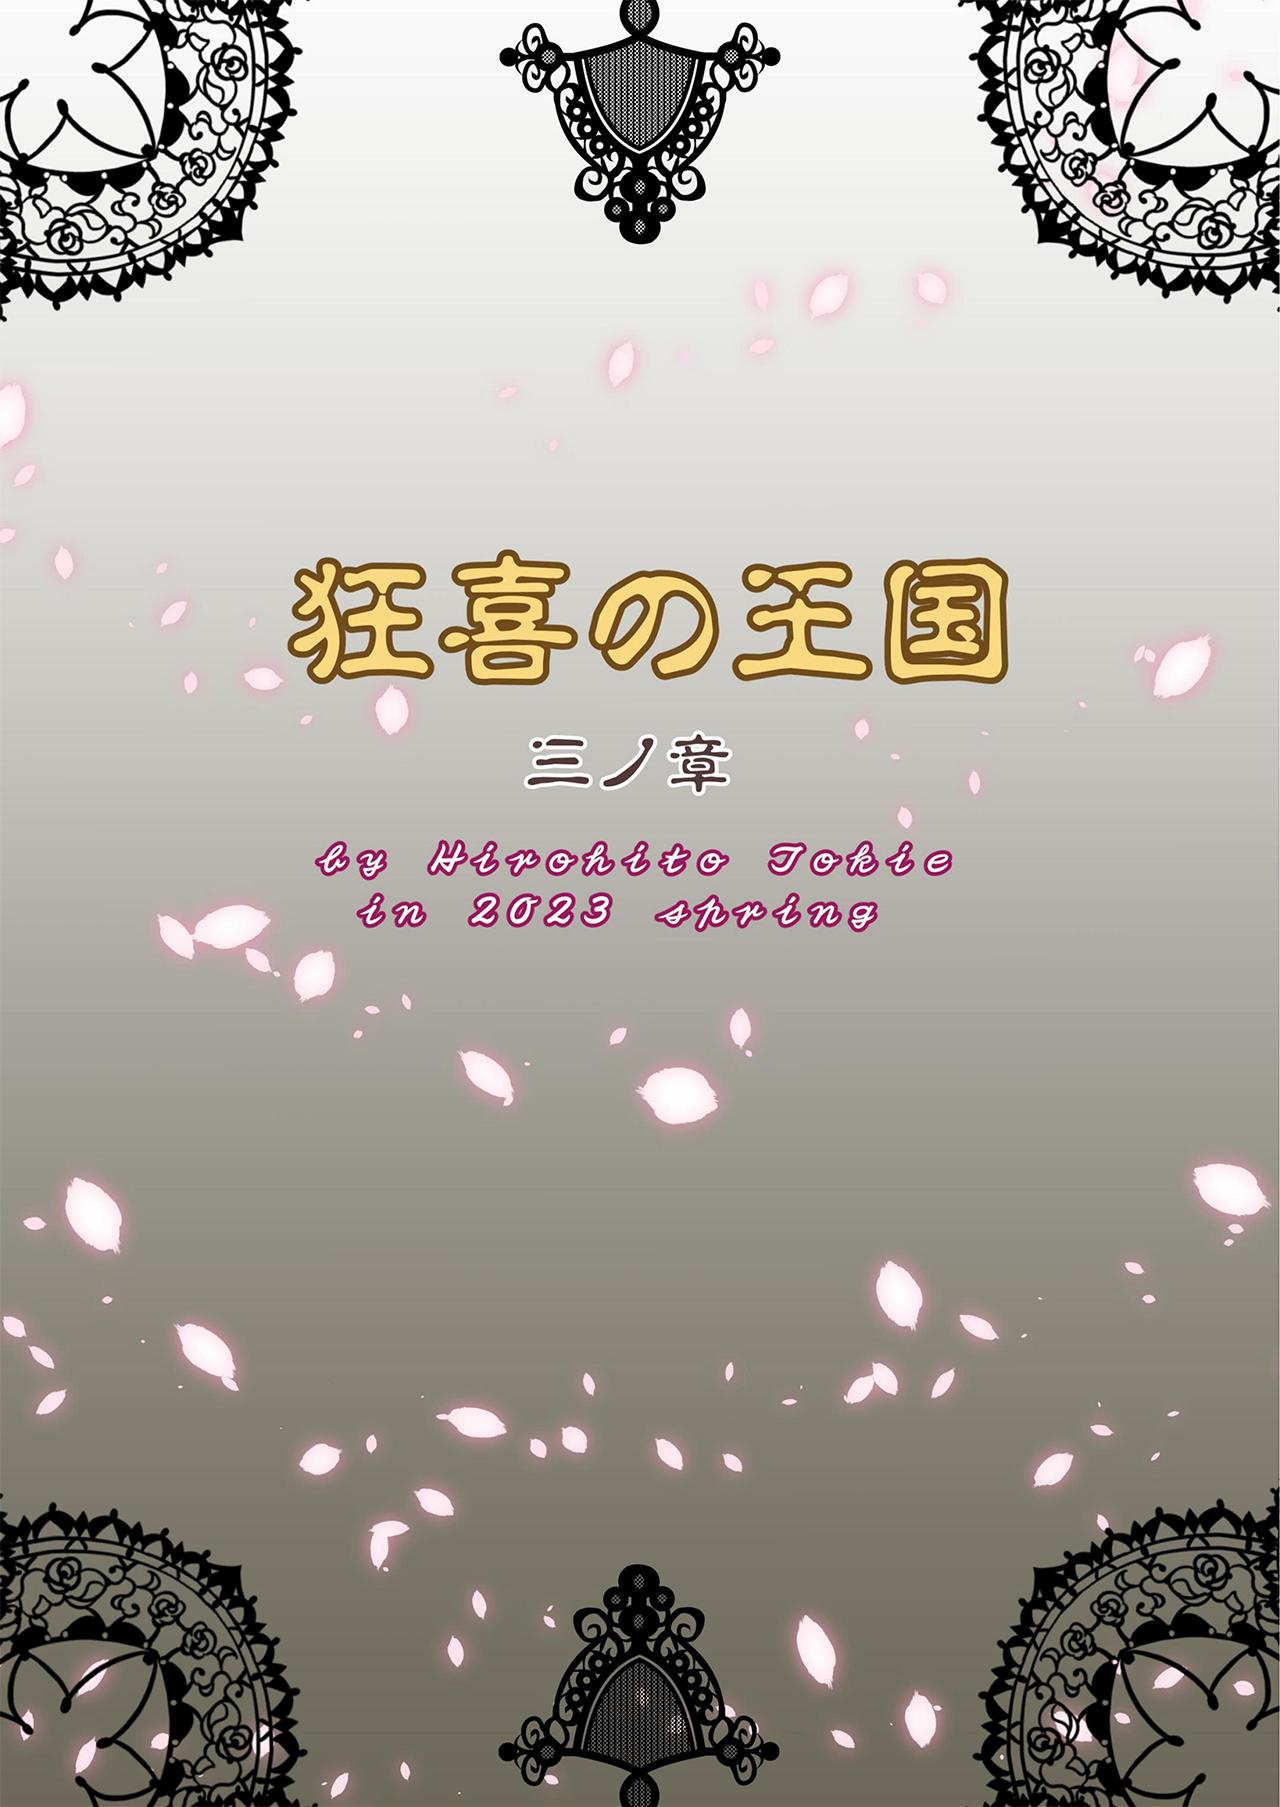 Kyouki no Oukoku San no Shou - Kingdom Of Madness Chapter Three 37